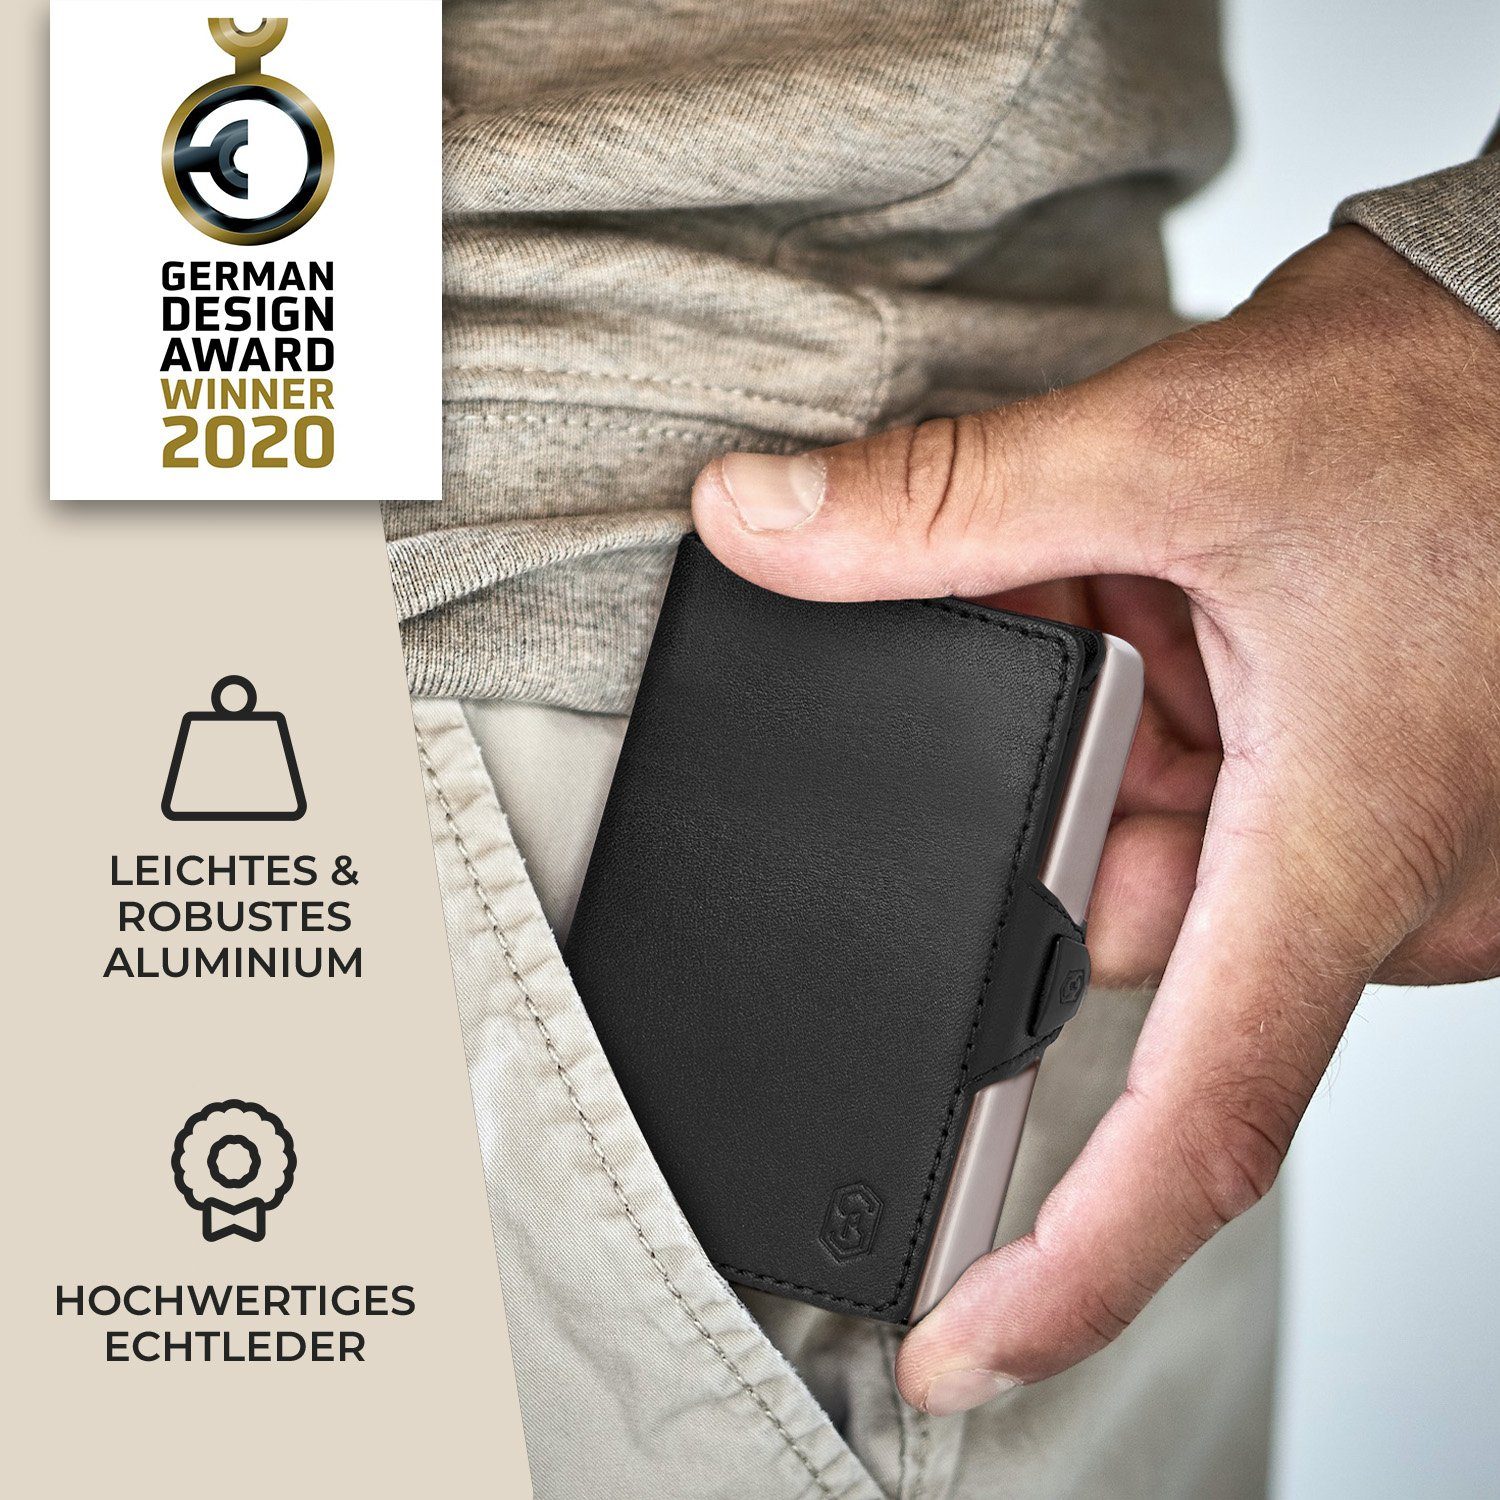 RFID-Schutz Wallet Slimpuro Herren Bankkarten (Set), 8 ZNAP Geldbörse Geldscheine Portemonnaie Karten Damen Slim Schwarz/Nickel Münzen